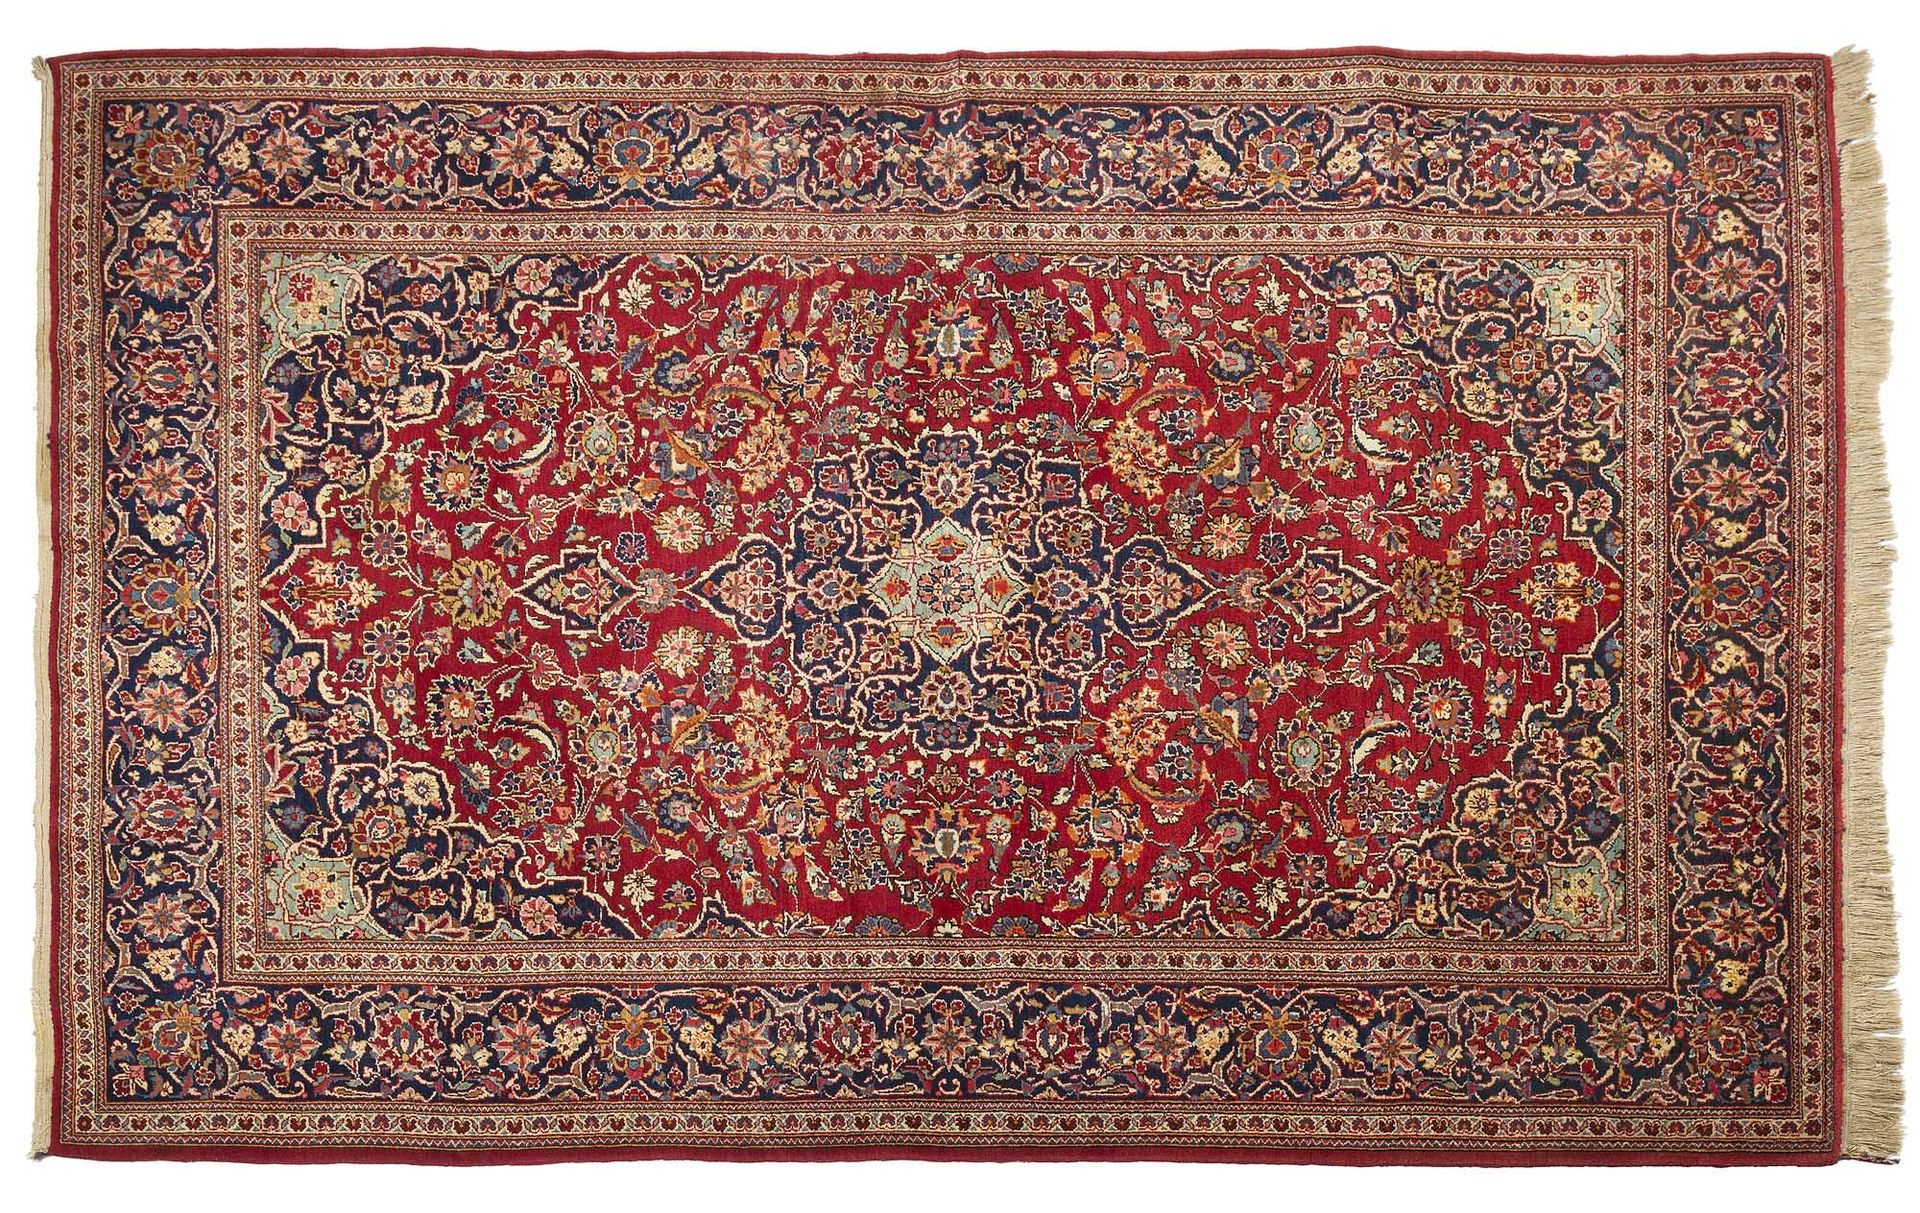 Null Tappeto KACHAN (Persia), 1° terzo del XX secolo.

Dimensioni: 205 x 135cm

&hellip;